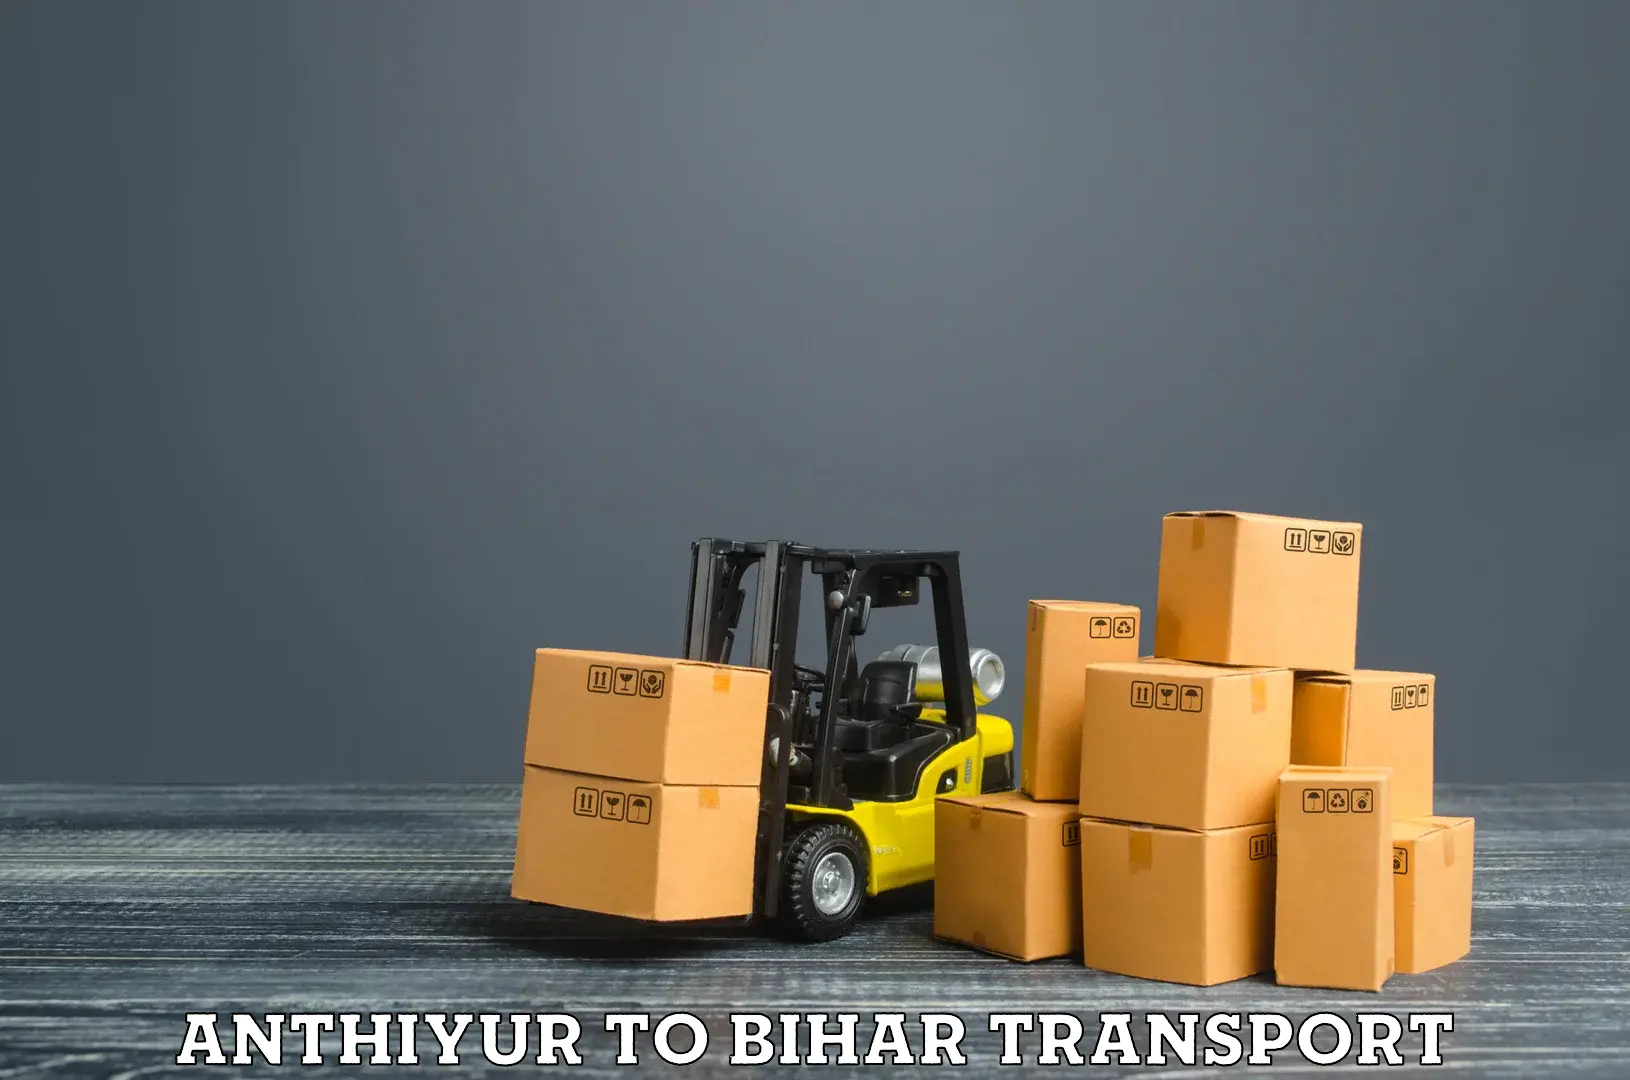 Shipping services Anthiyur to Jiwdhara